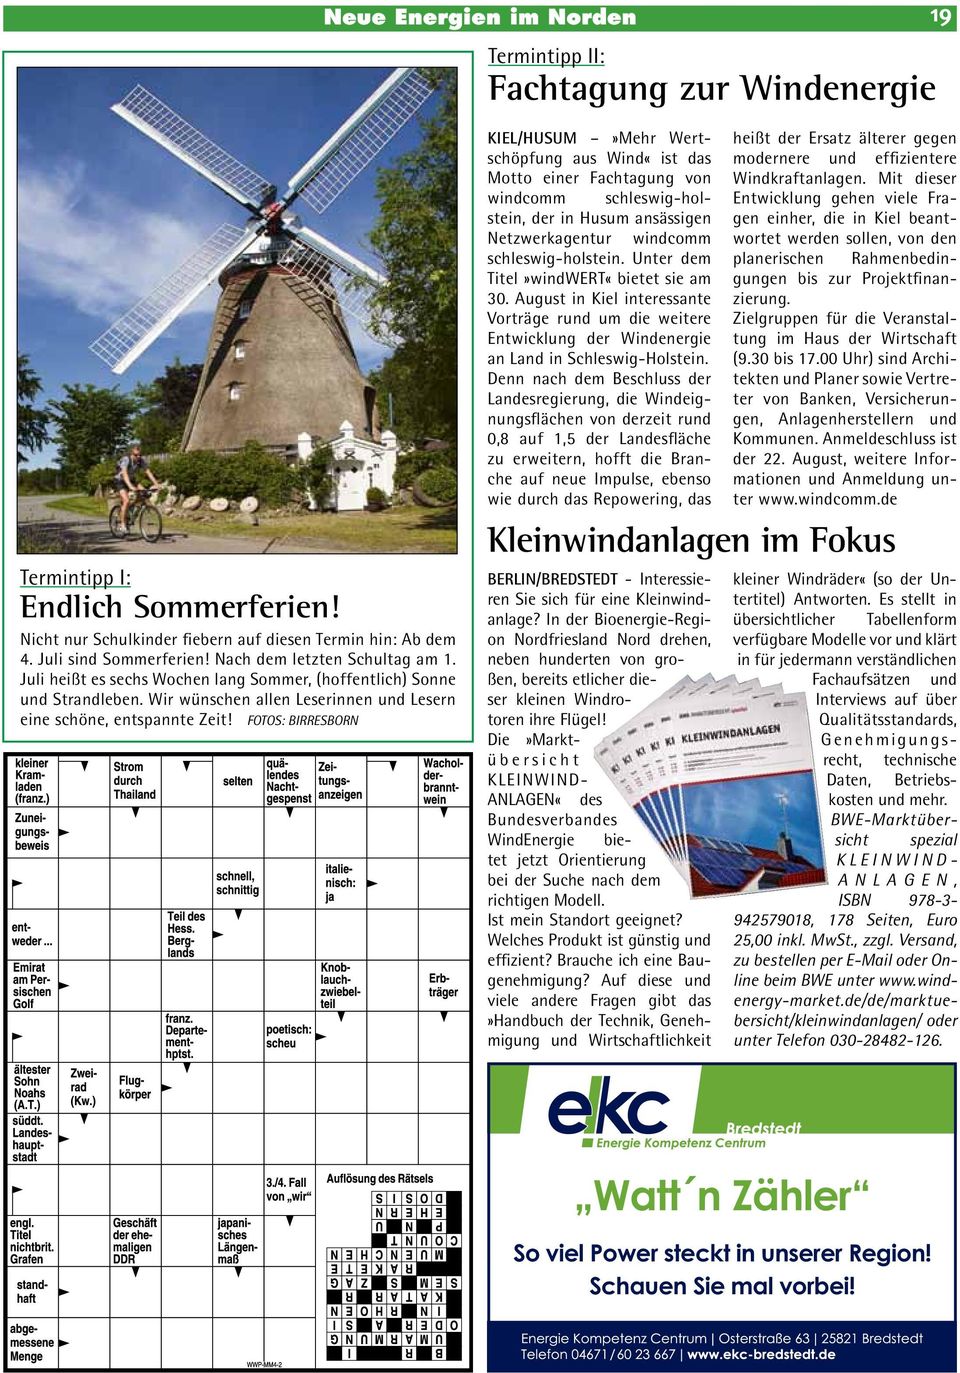 Fotos: Birresborn KIEL/HUSUM»Mehr Wertschöpfung aus Wind«ist das Motto einer Fachtagung von windcomm schleswig-holstein, der in Husum ansässigen Netzwerkagentur windcomm schleswig-holstein.